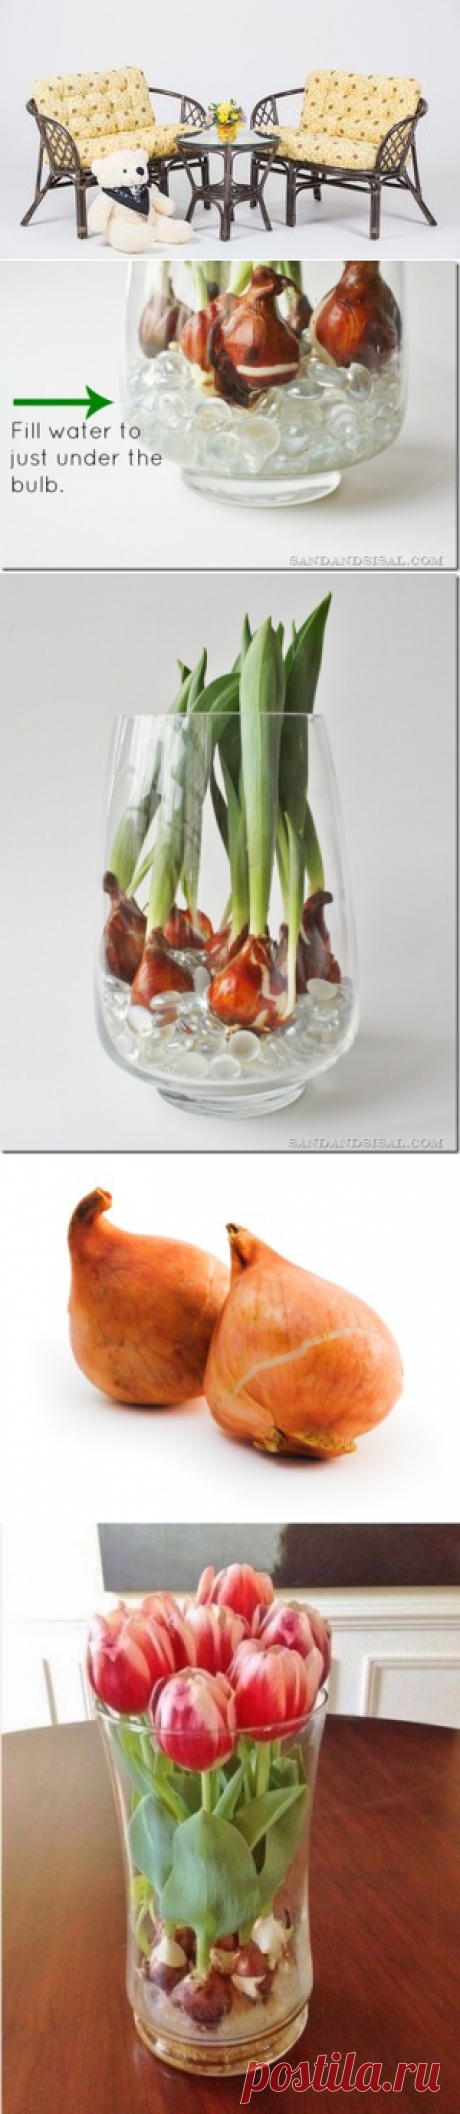 Как вырастить тюльпаны дома в любое время года с помощью стеклянных шариков и воды? — Полезные советы